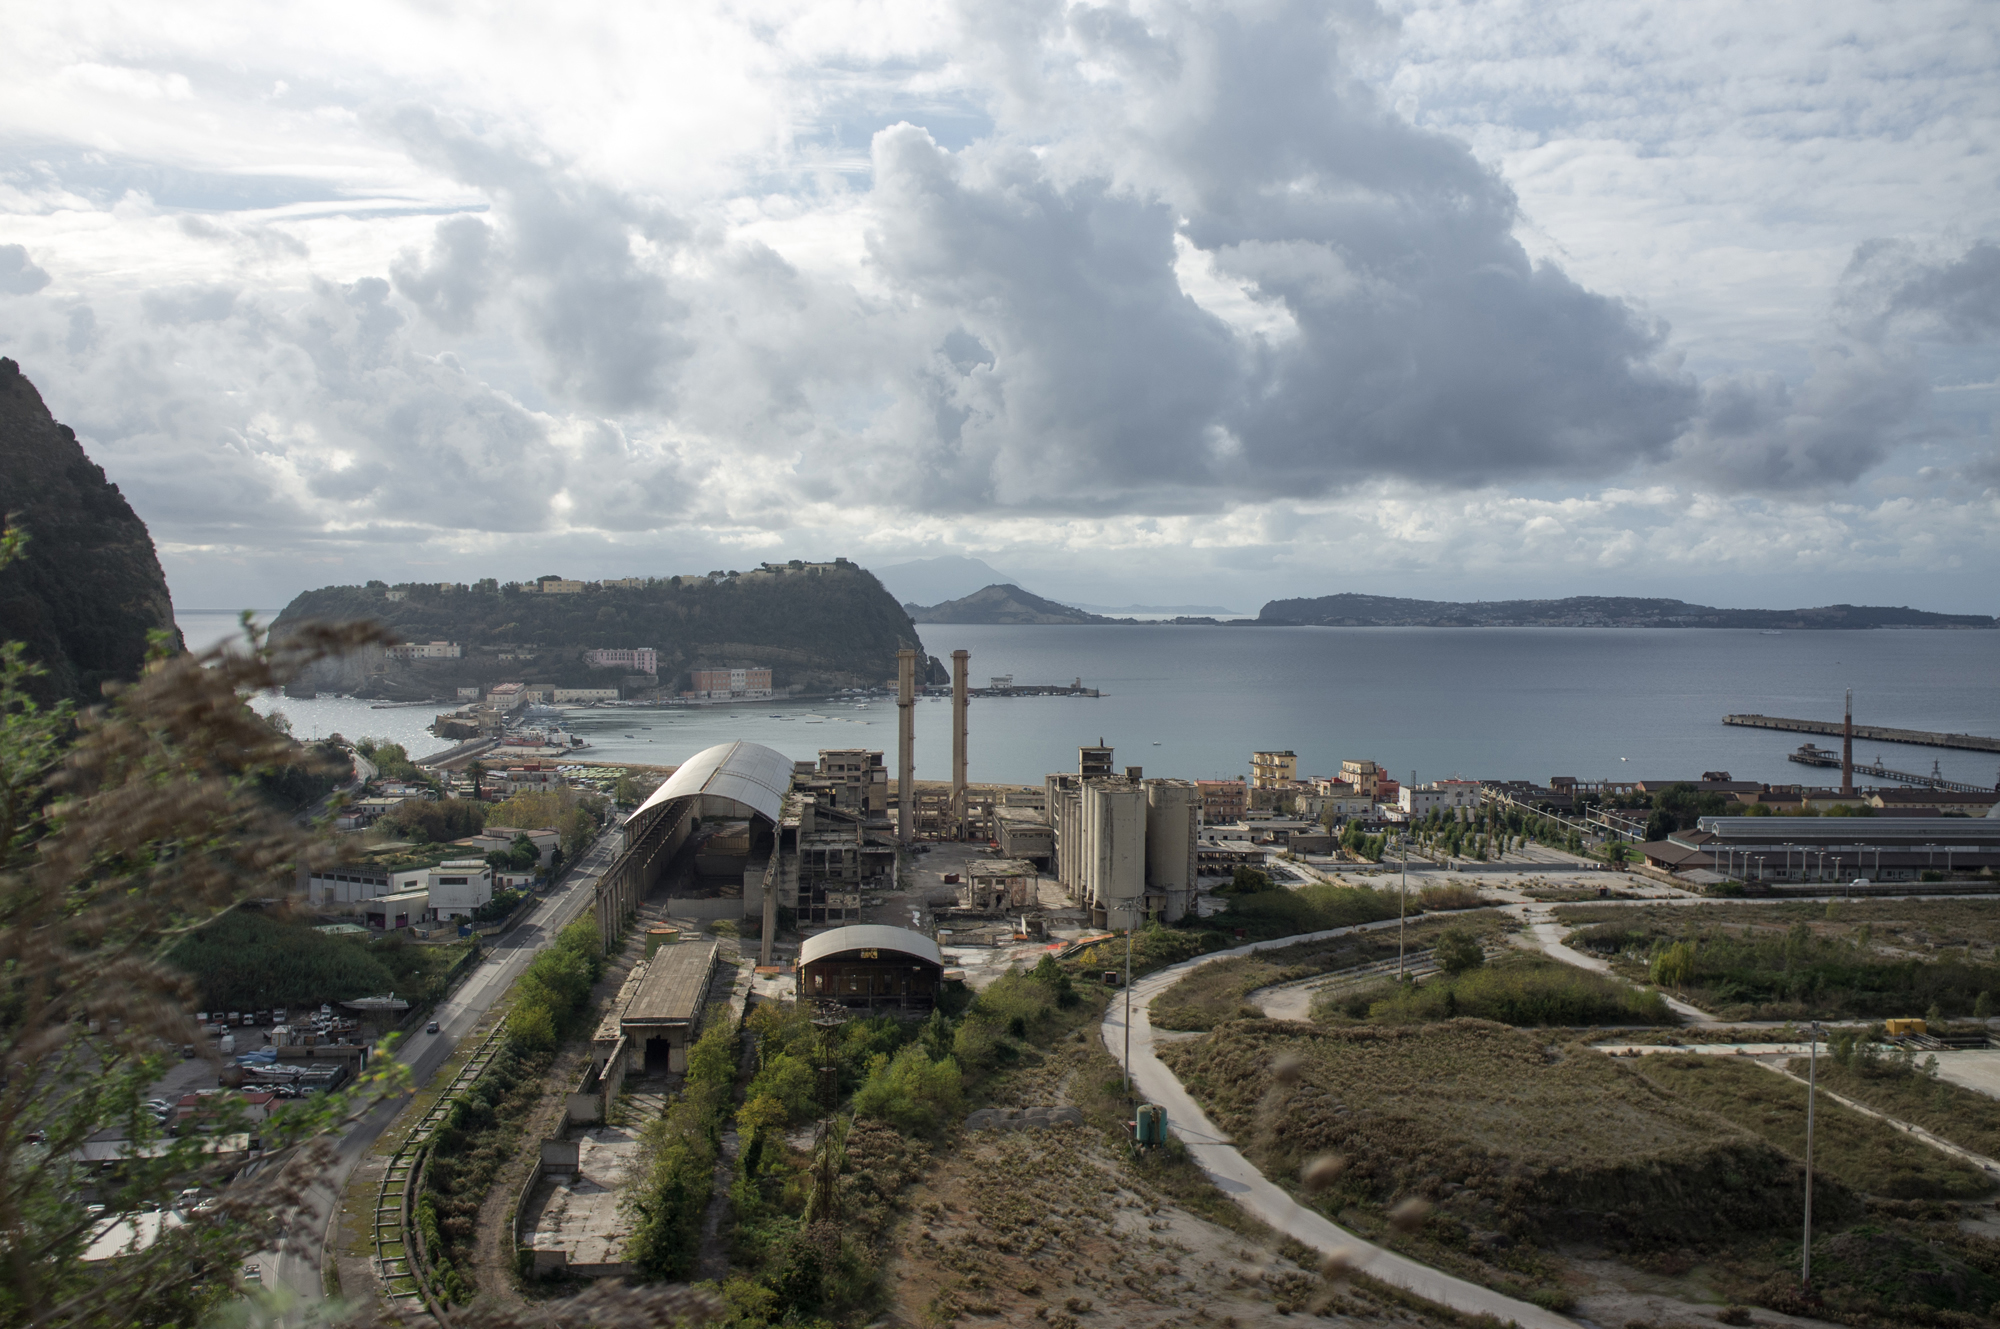  L’area di Bagnoli vista da Posillipo, in primo piano l’isola di Nisida e la Cementir. Nata nel 1954 utilizzava, come materia prima per la produzione di cemento, un sottoprodotto delle lavorazioni siderurgiche. Le attività produttive dello stabilimen